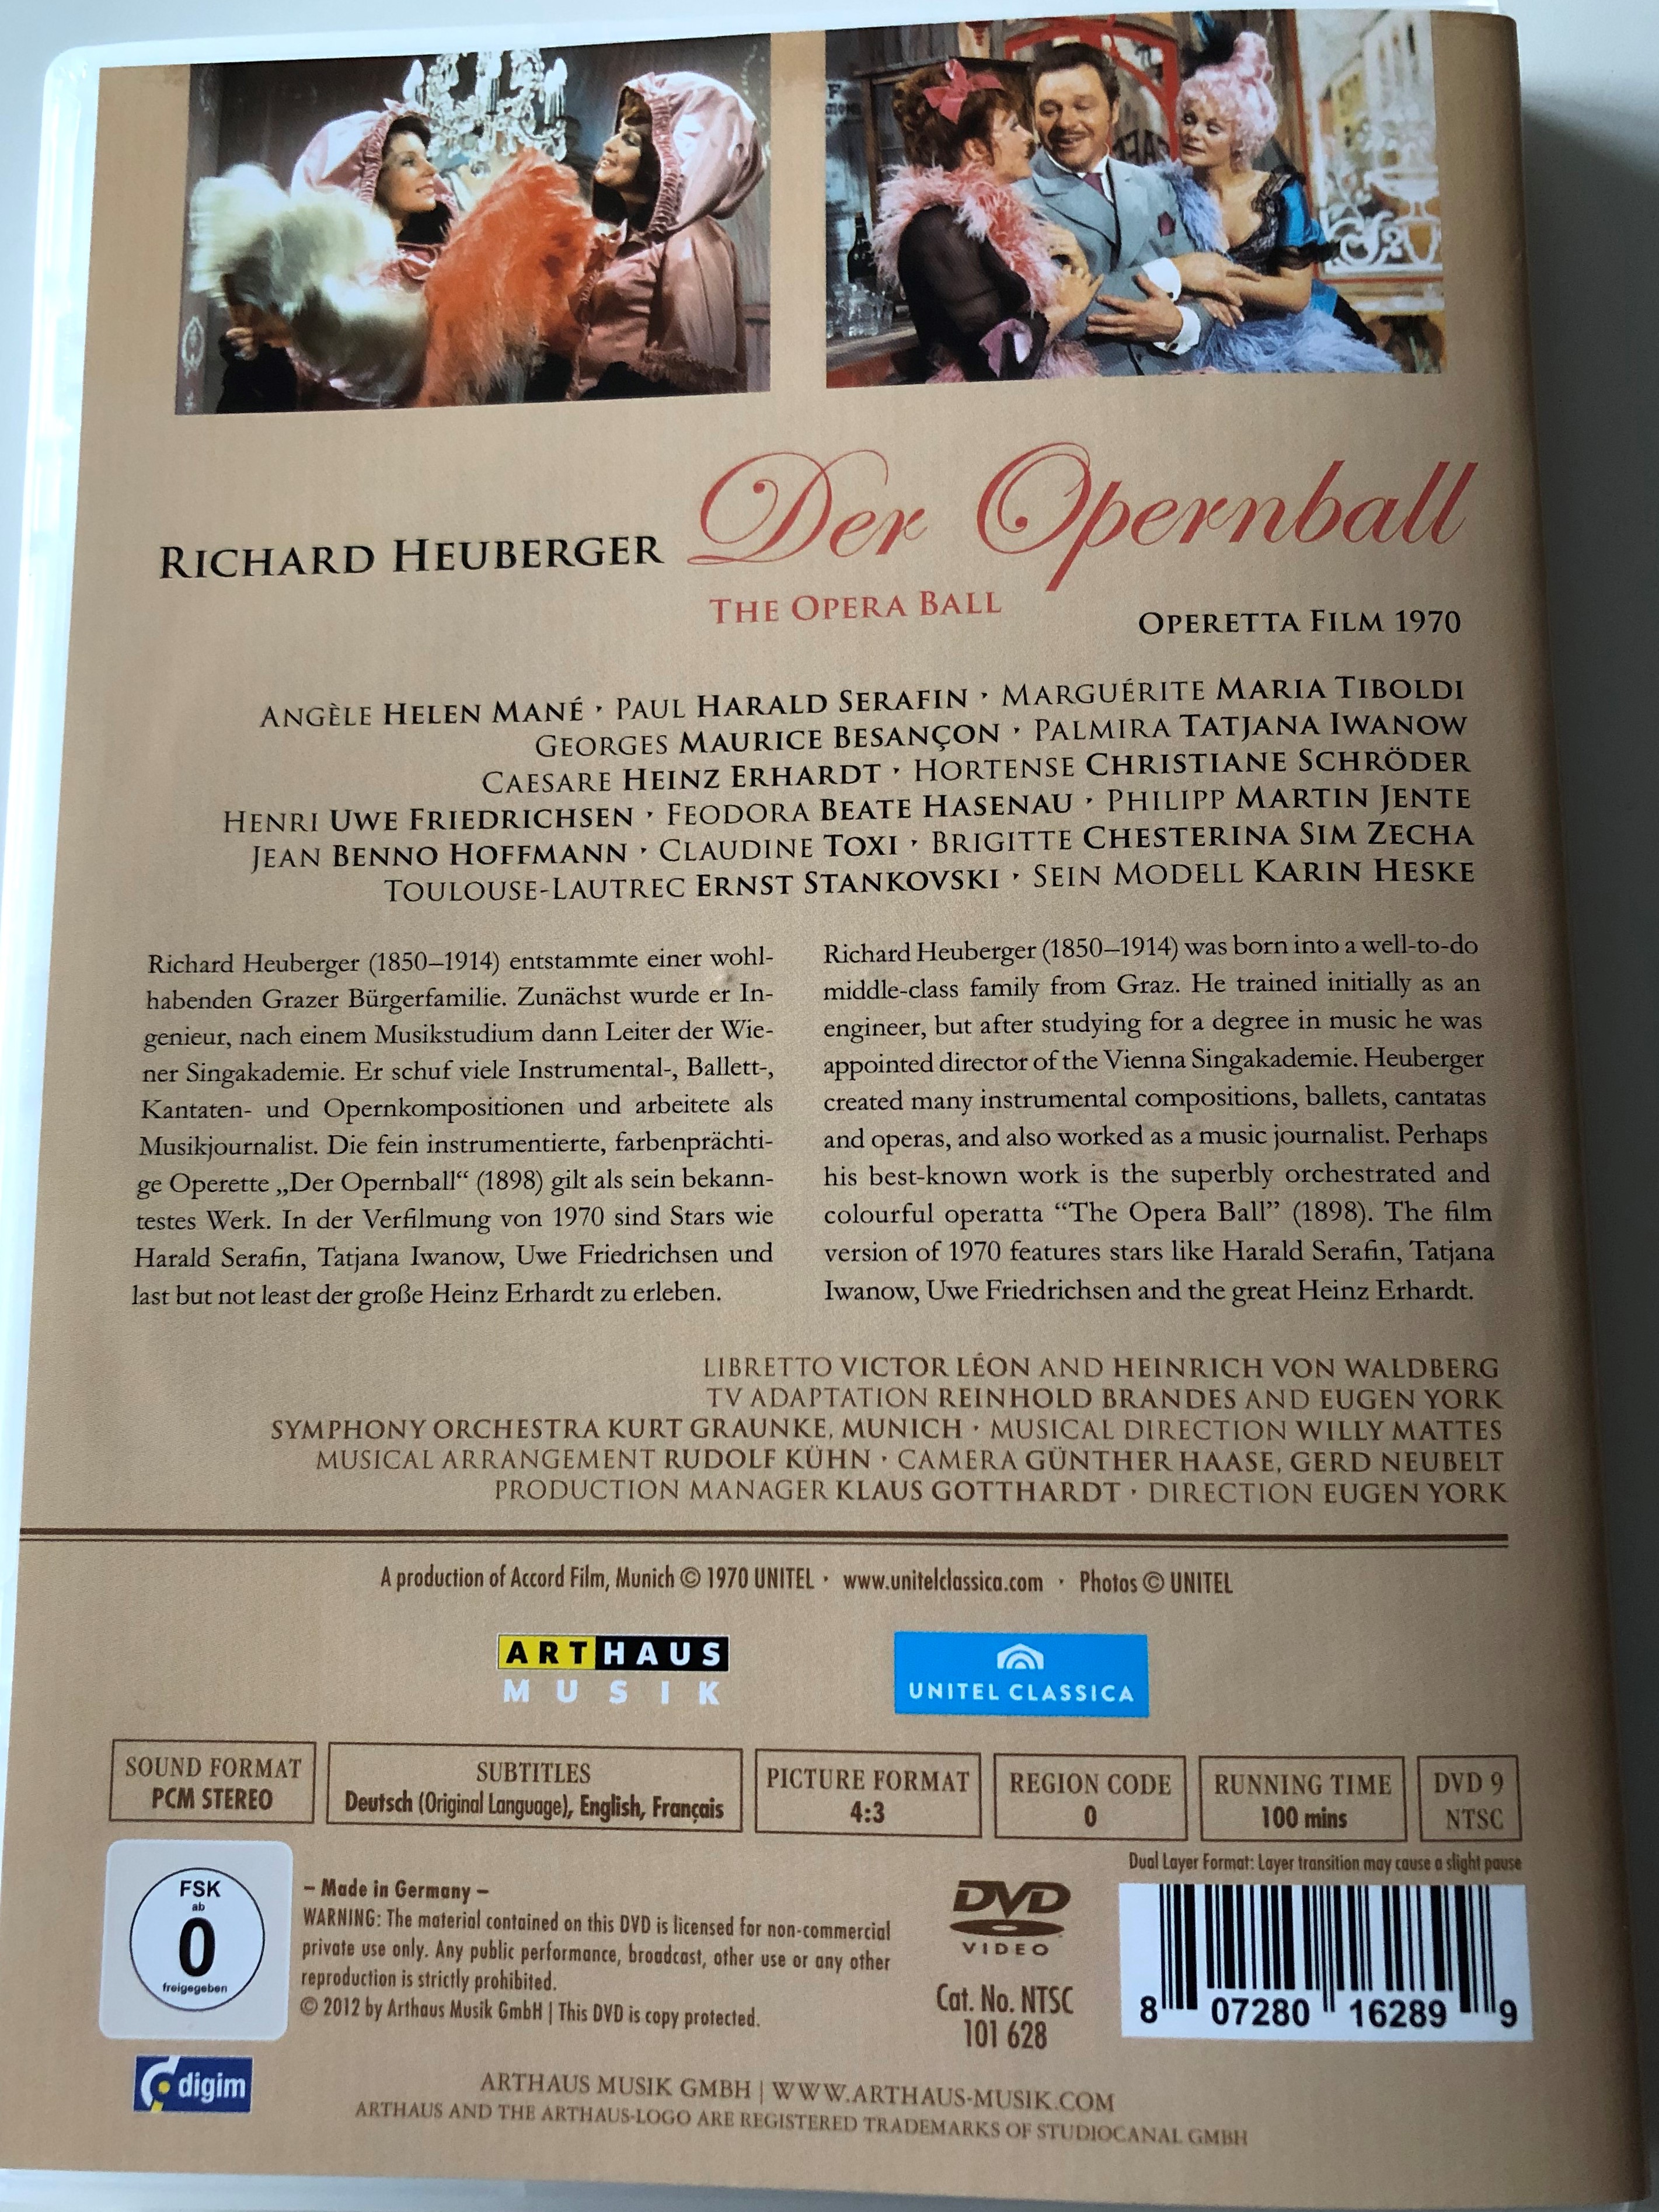 the-opera-ball-dvd-1970-richard-heuberger-der-opernball-4.jpg